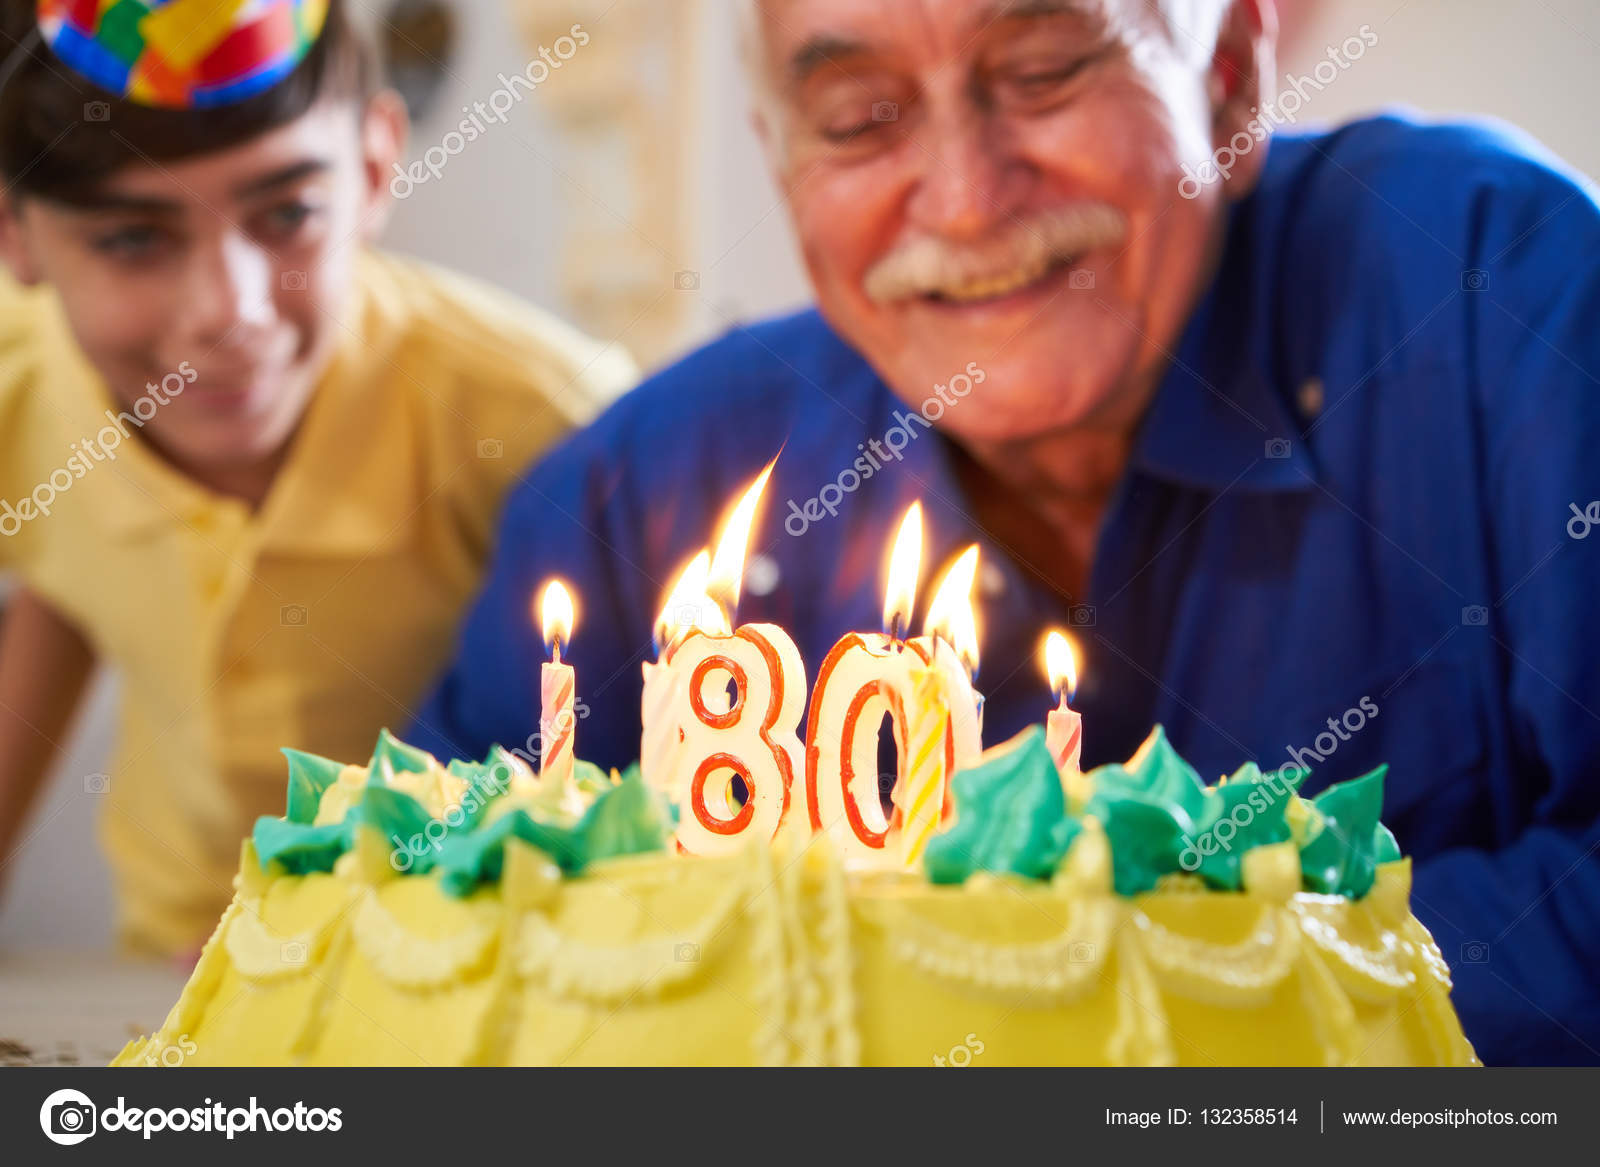 Close-up do homem adulto engraçado comemorando seu aniversário, segurando o  bolo bday com vela, soprando wistle festa e regozijando-se, em pé sobre  fundo azul claro.